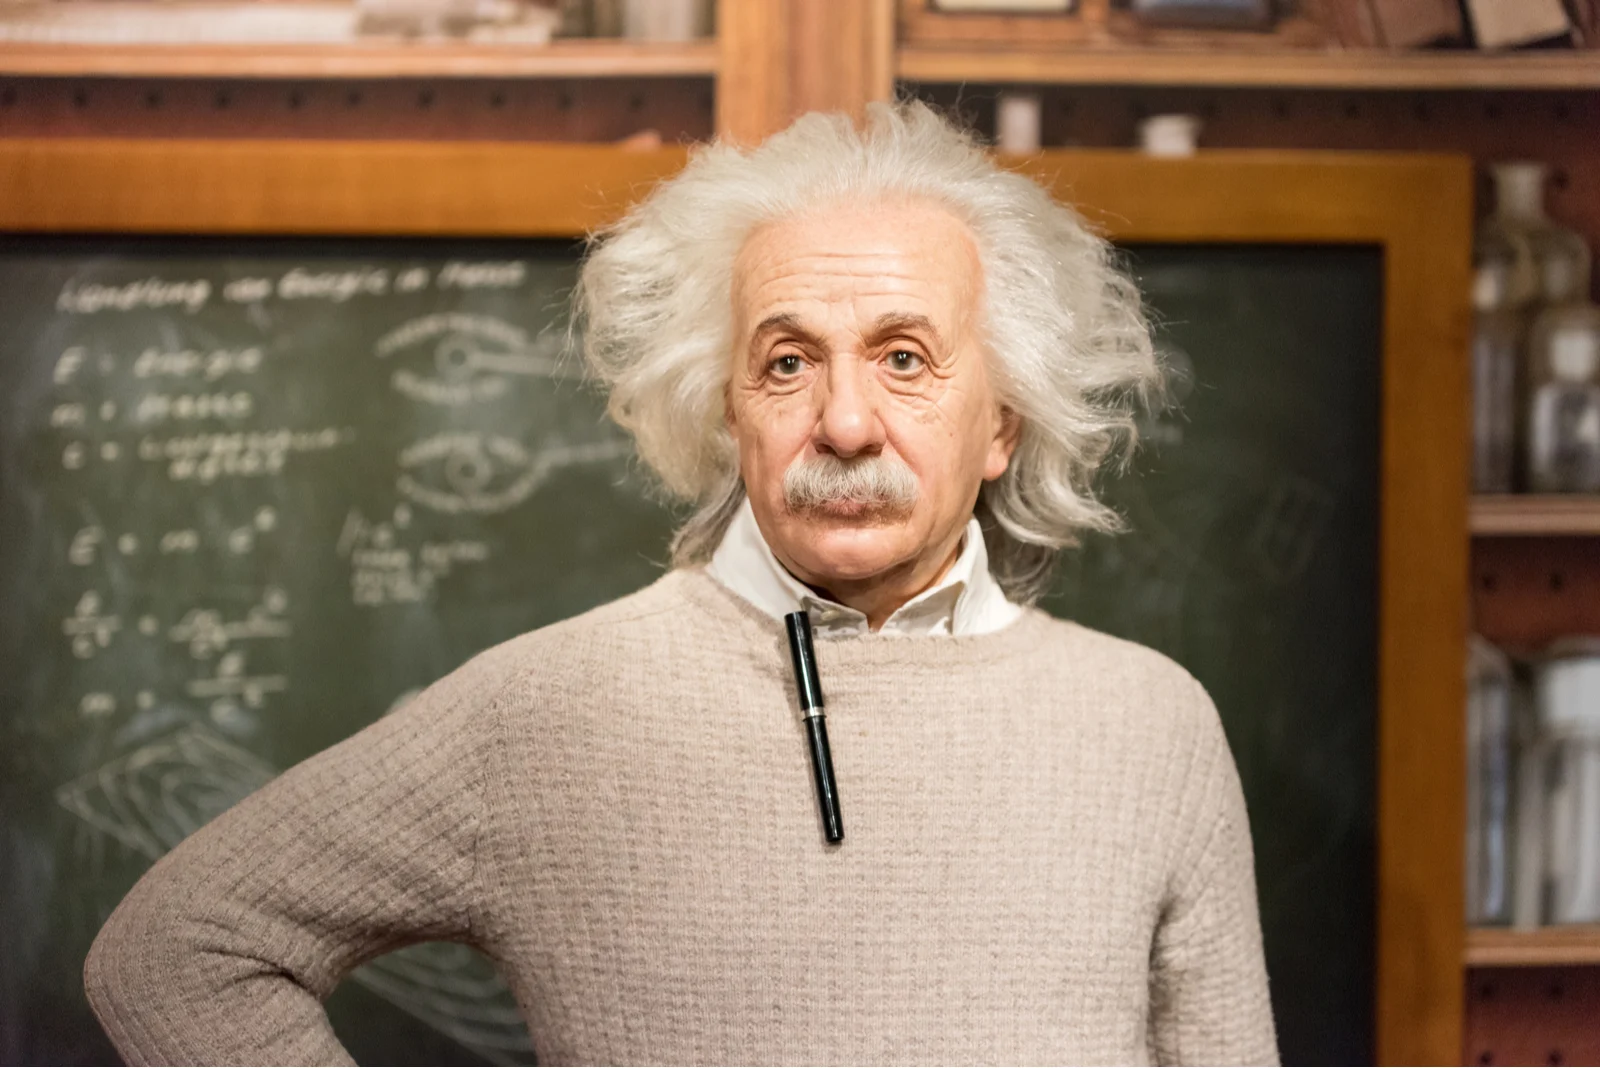 Albert Einstein wax figure